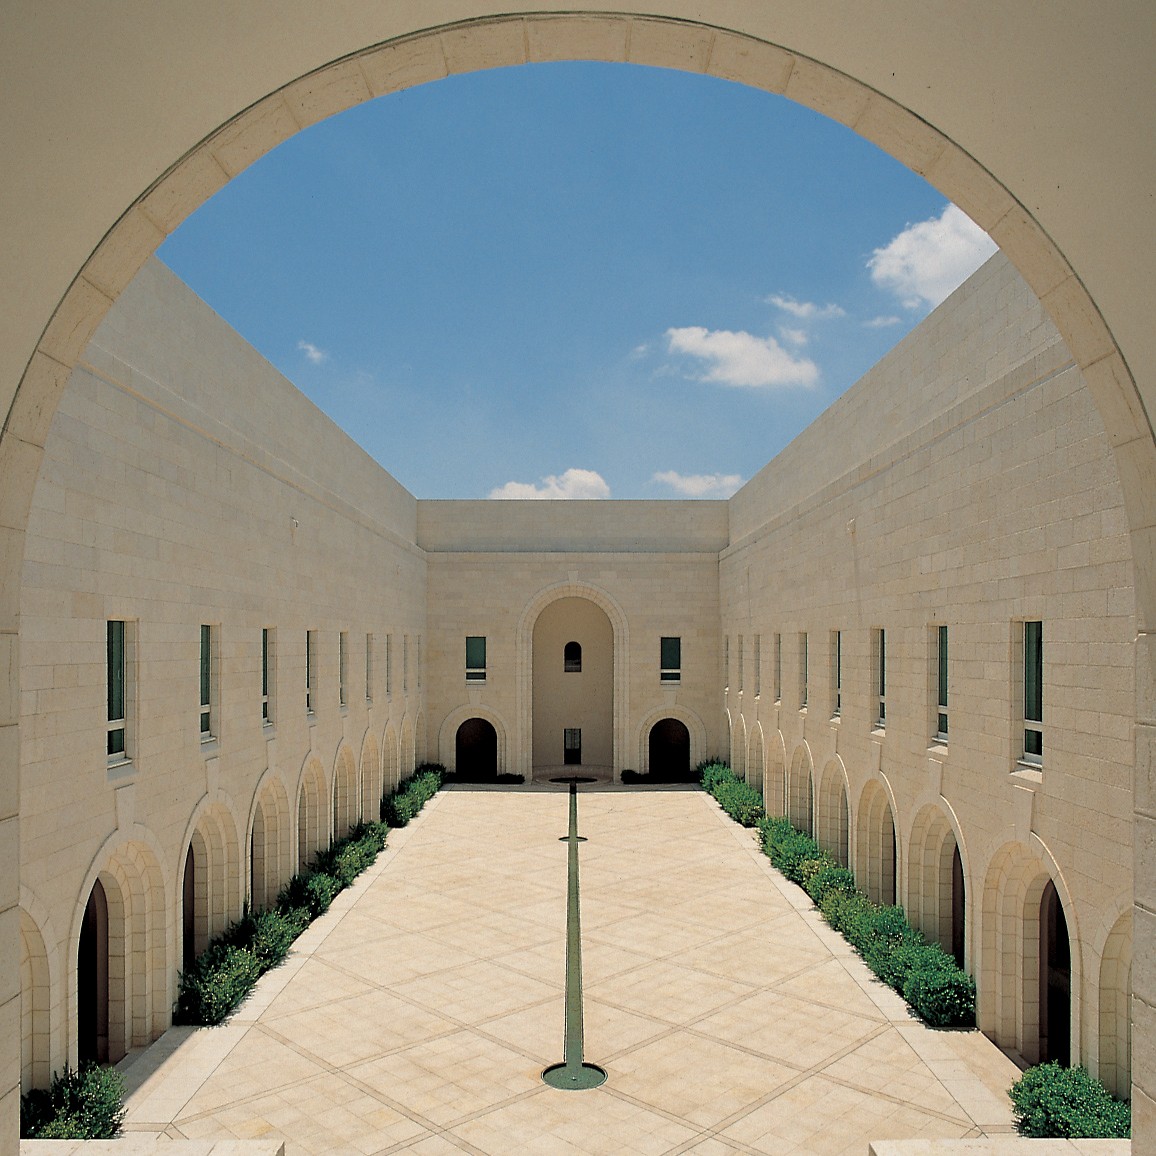 Israel’s Supreme Court. Jerusalem, Israel (1993)